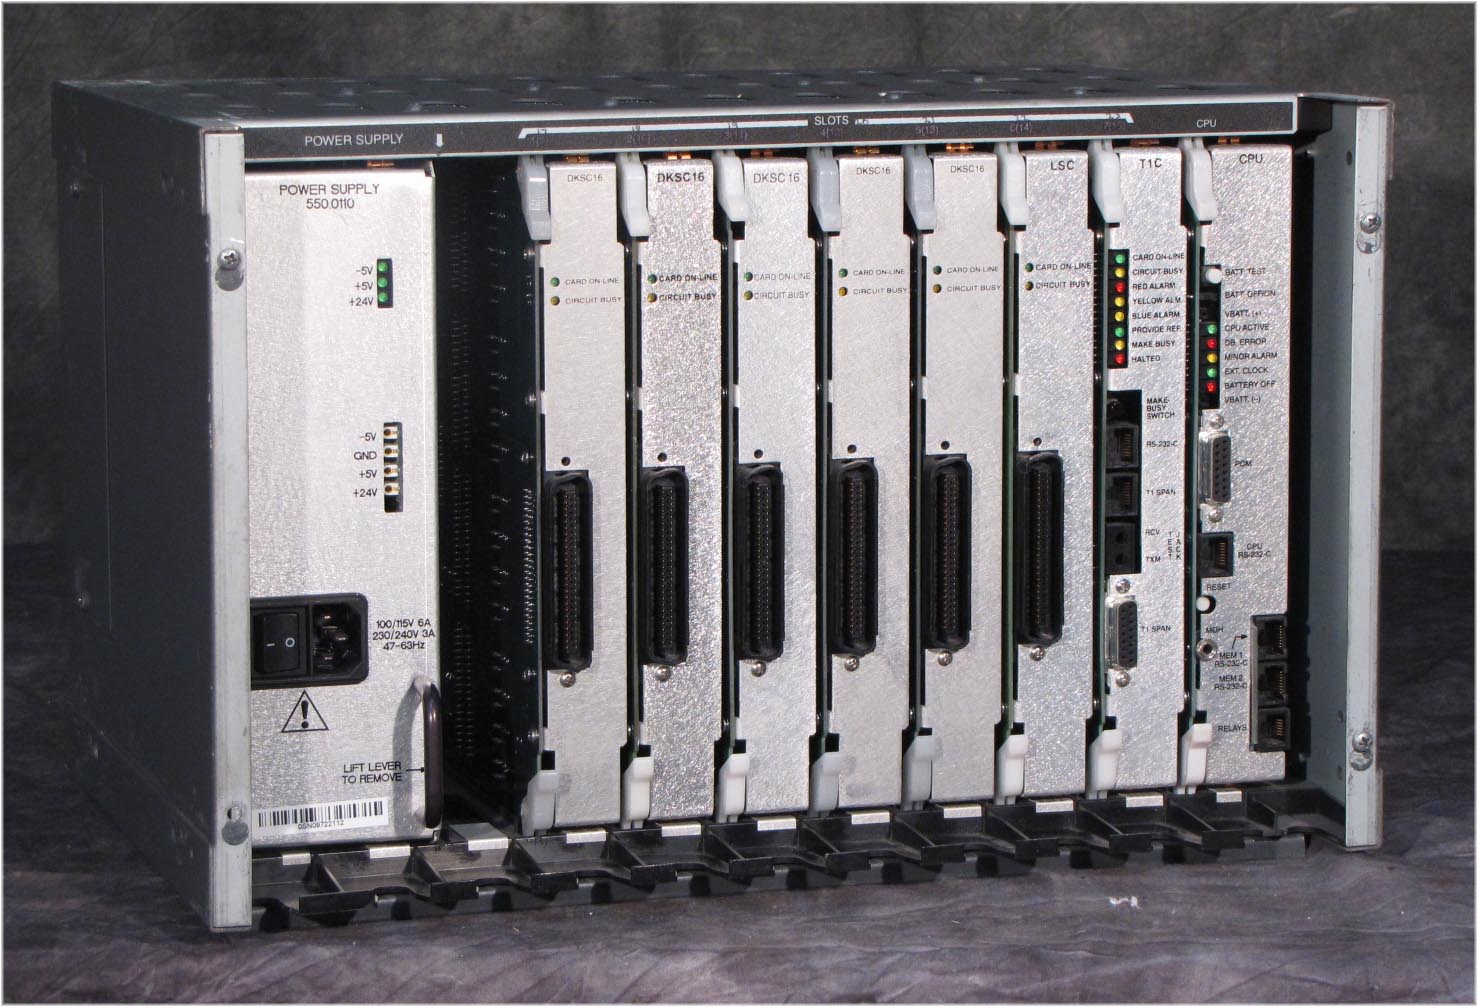 Inter-Tel Mitel Axxess PBX KSU chassis with cards